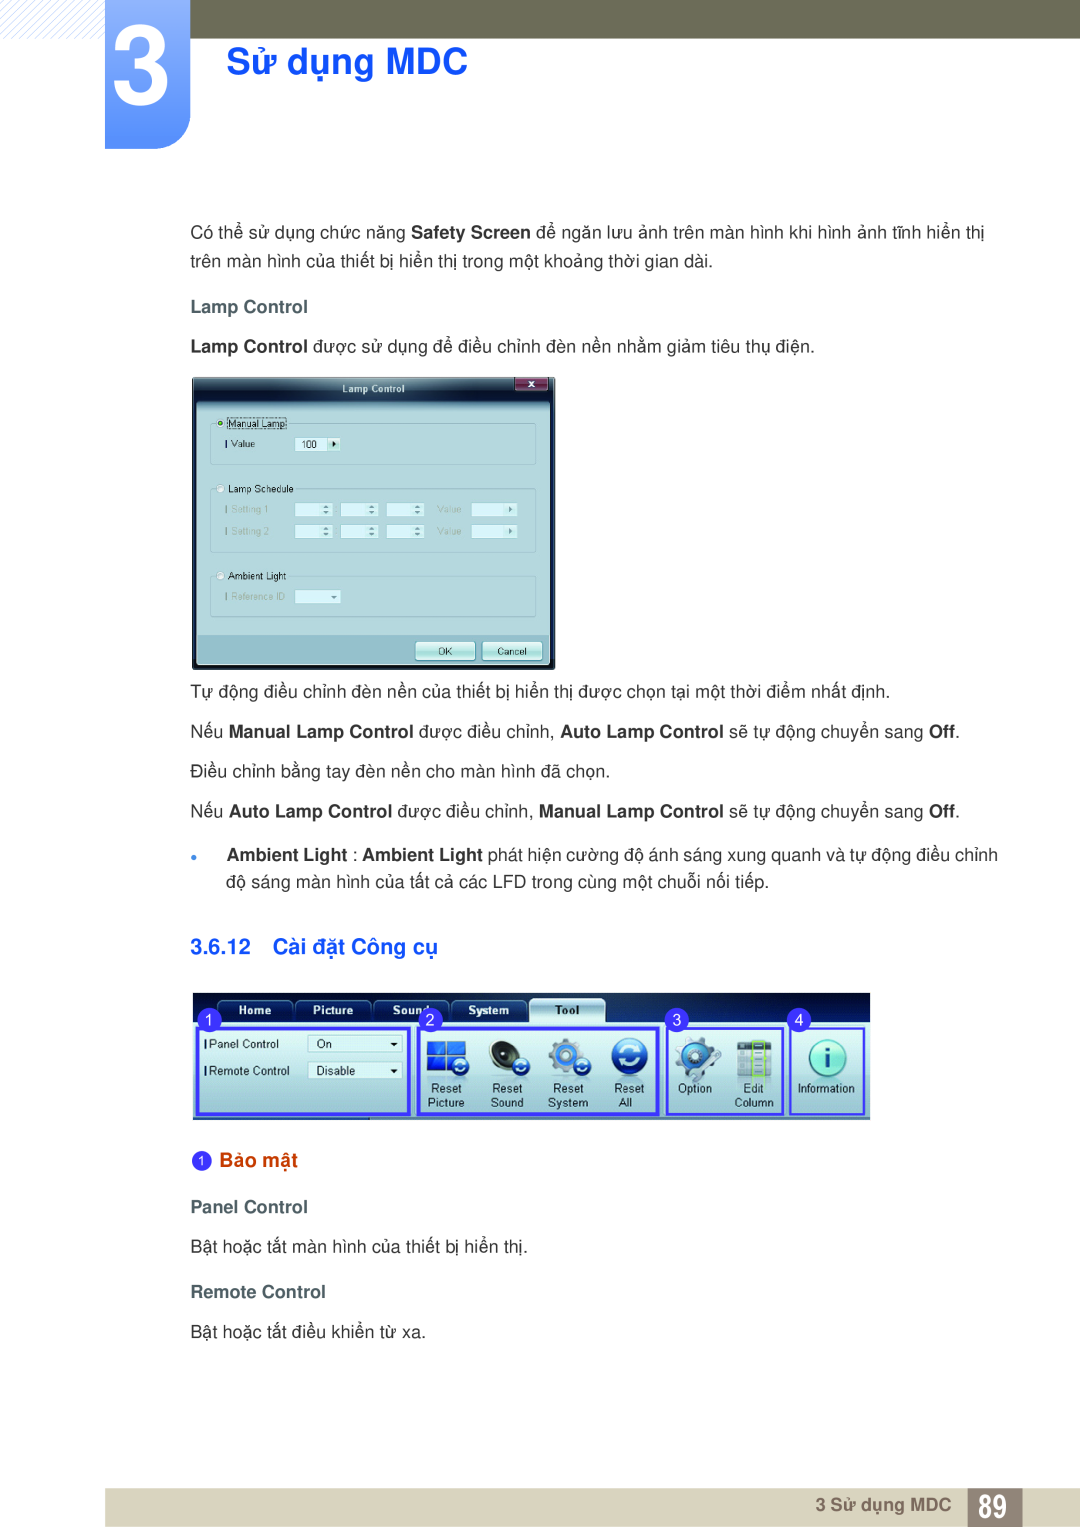 Samsung LH46UEAPLGC/XS manual 3.6.12 Cài đặt Công cụ, 3 Sử dụng MDC, 1 Bảo mật, Lamp Control, Panel Control, Remote Control 